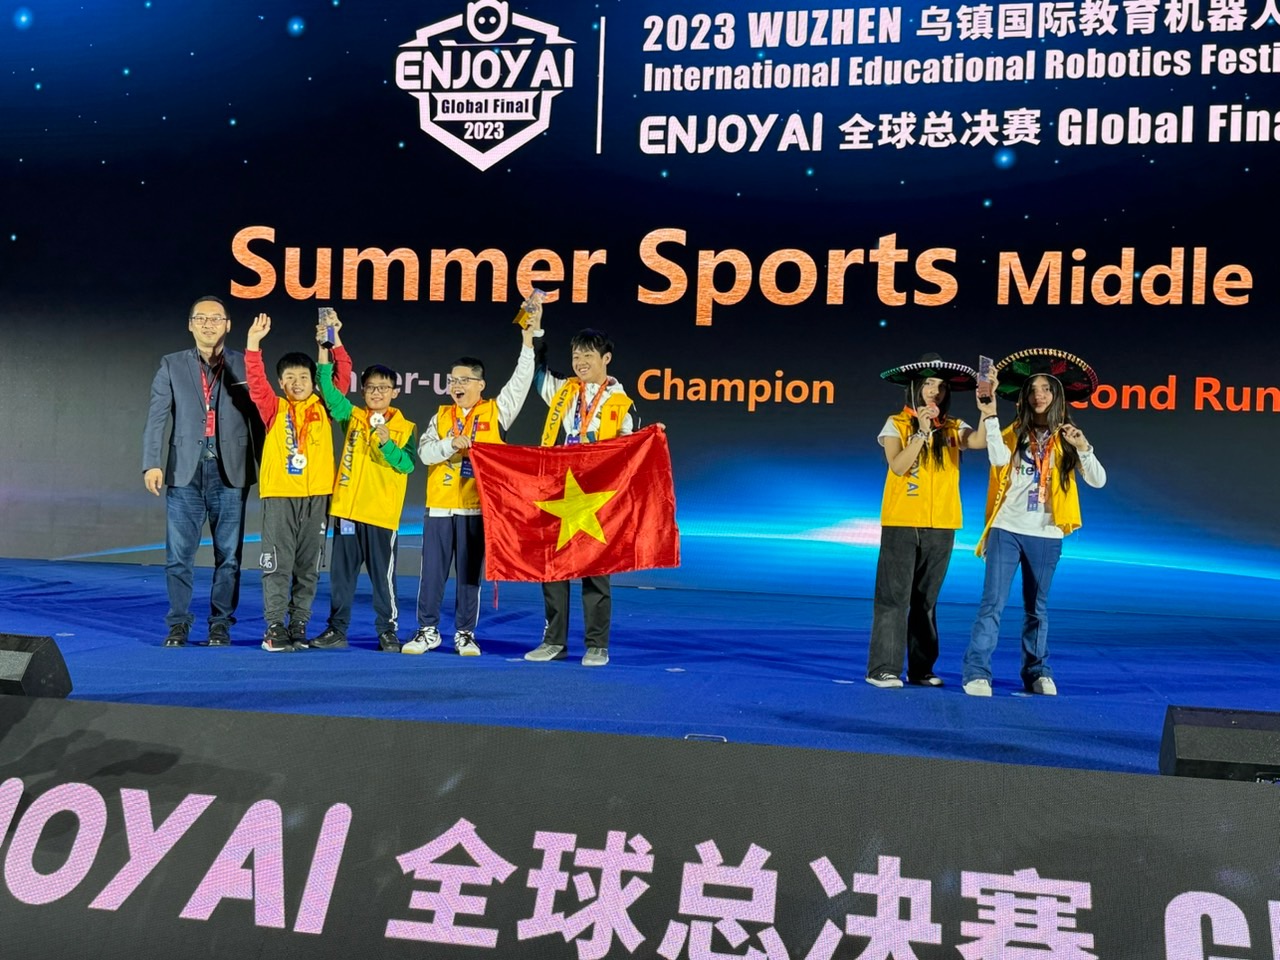 3 đội tham dự Việt Nam đã đạt được giải trong cuộc thi